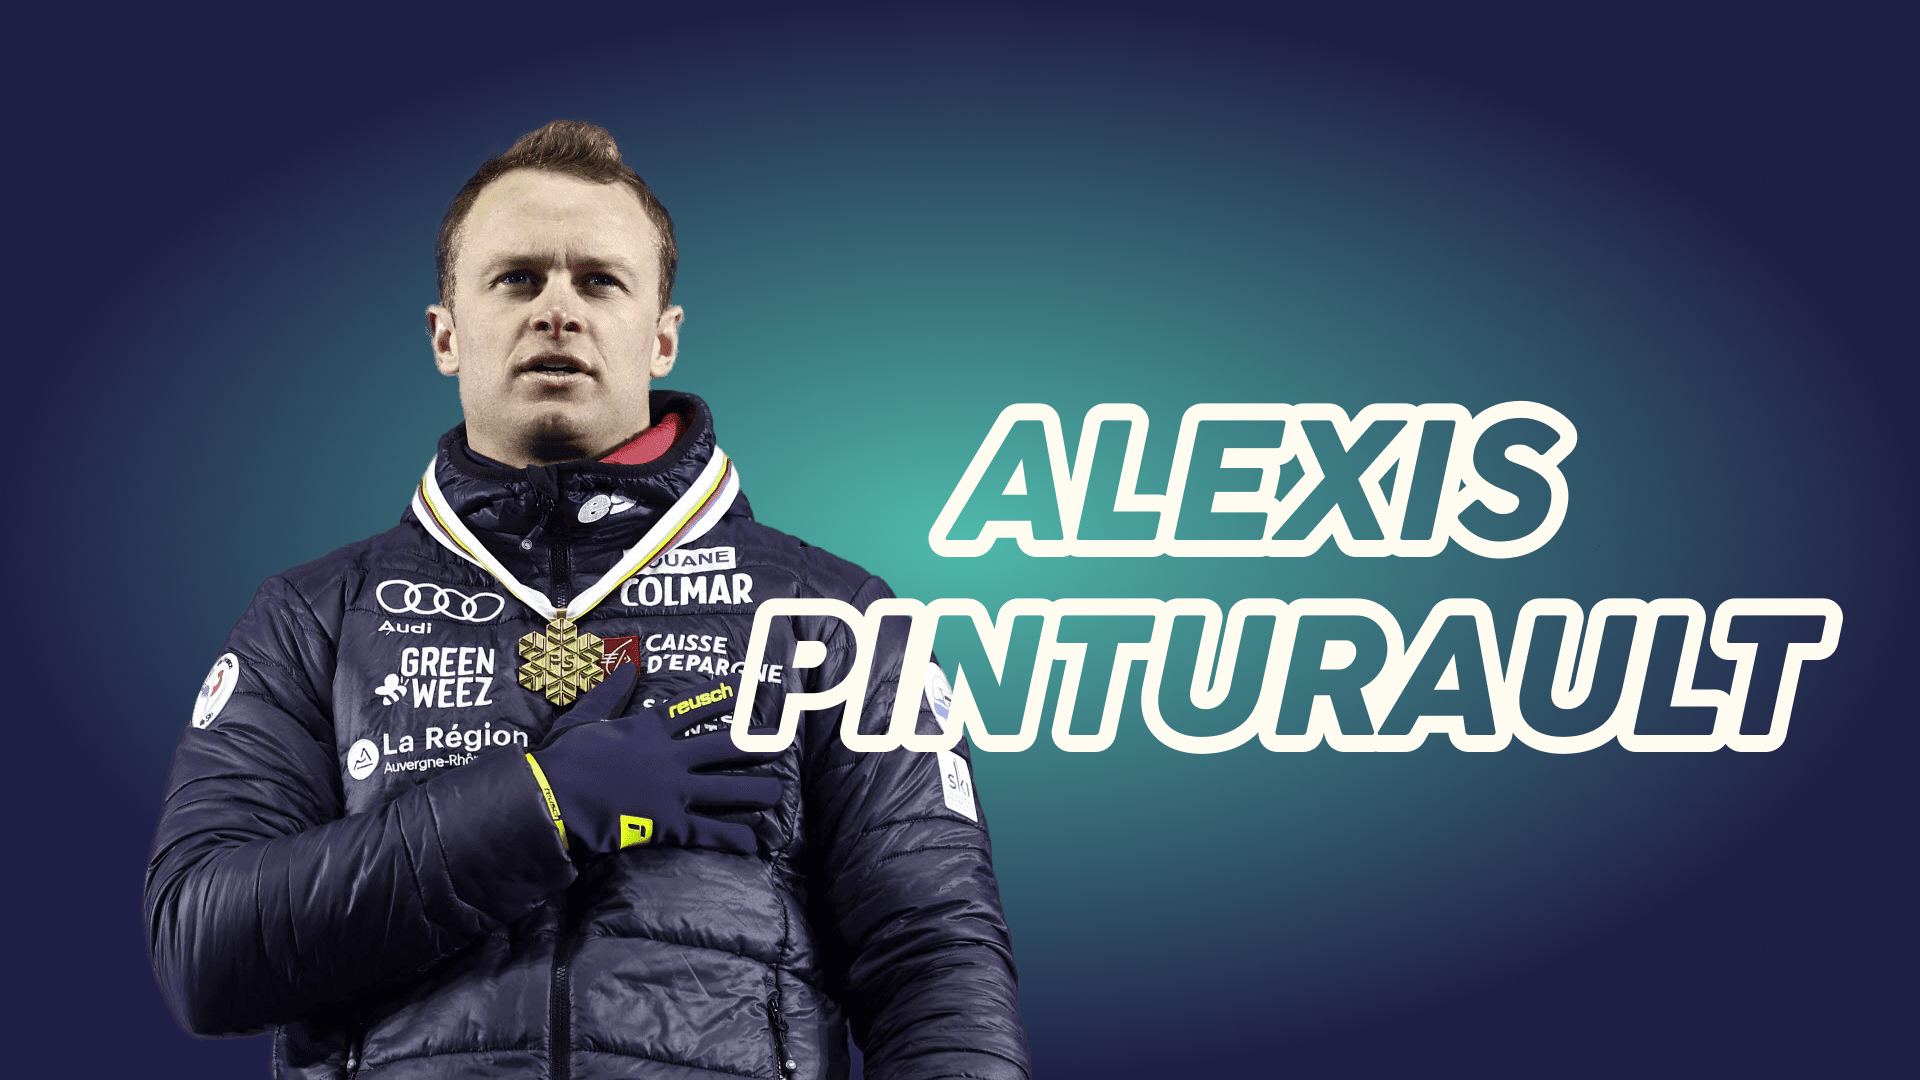 You are currently viewing Alexis Pinturault – La légende du ski français⛷